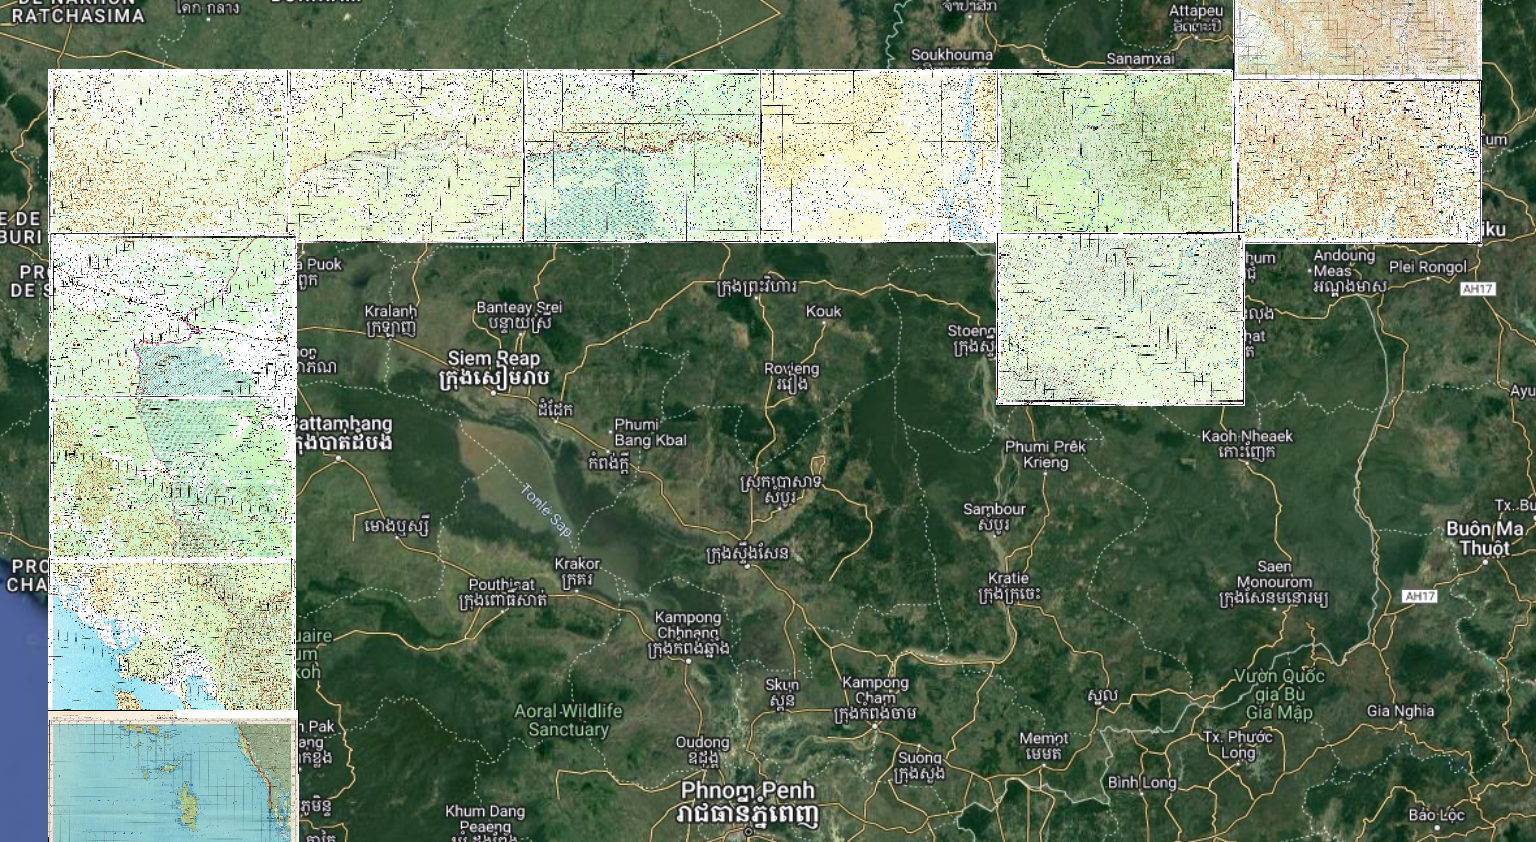 You are currently viewing Les frontières terrestres du #Cambodge avec la #Thaïlande et le #Laos selon les cartes à l’échelle 1/200 000 éditées par l’Union Soviétique